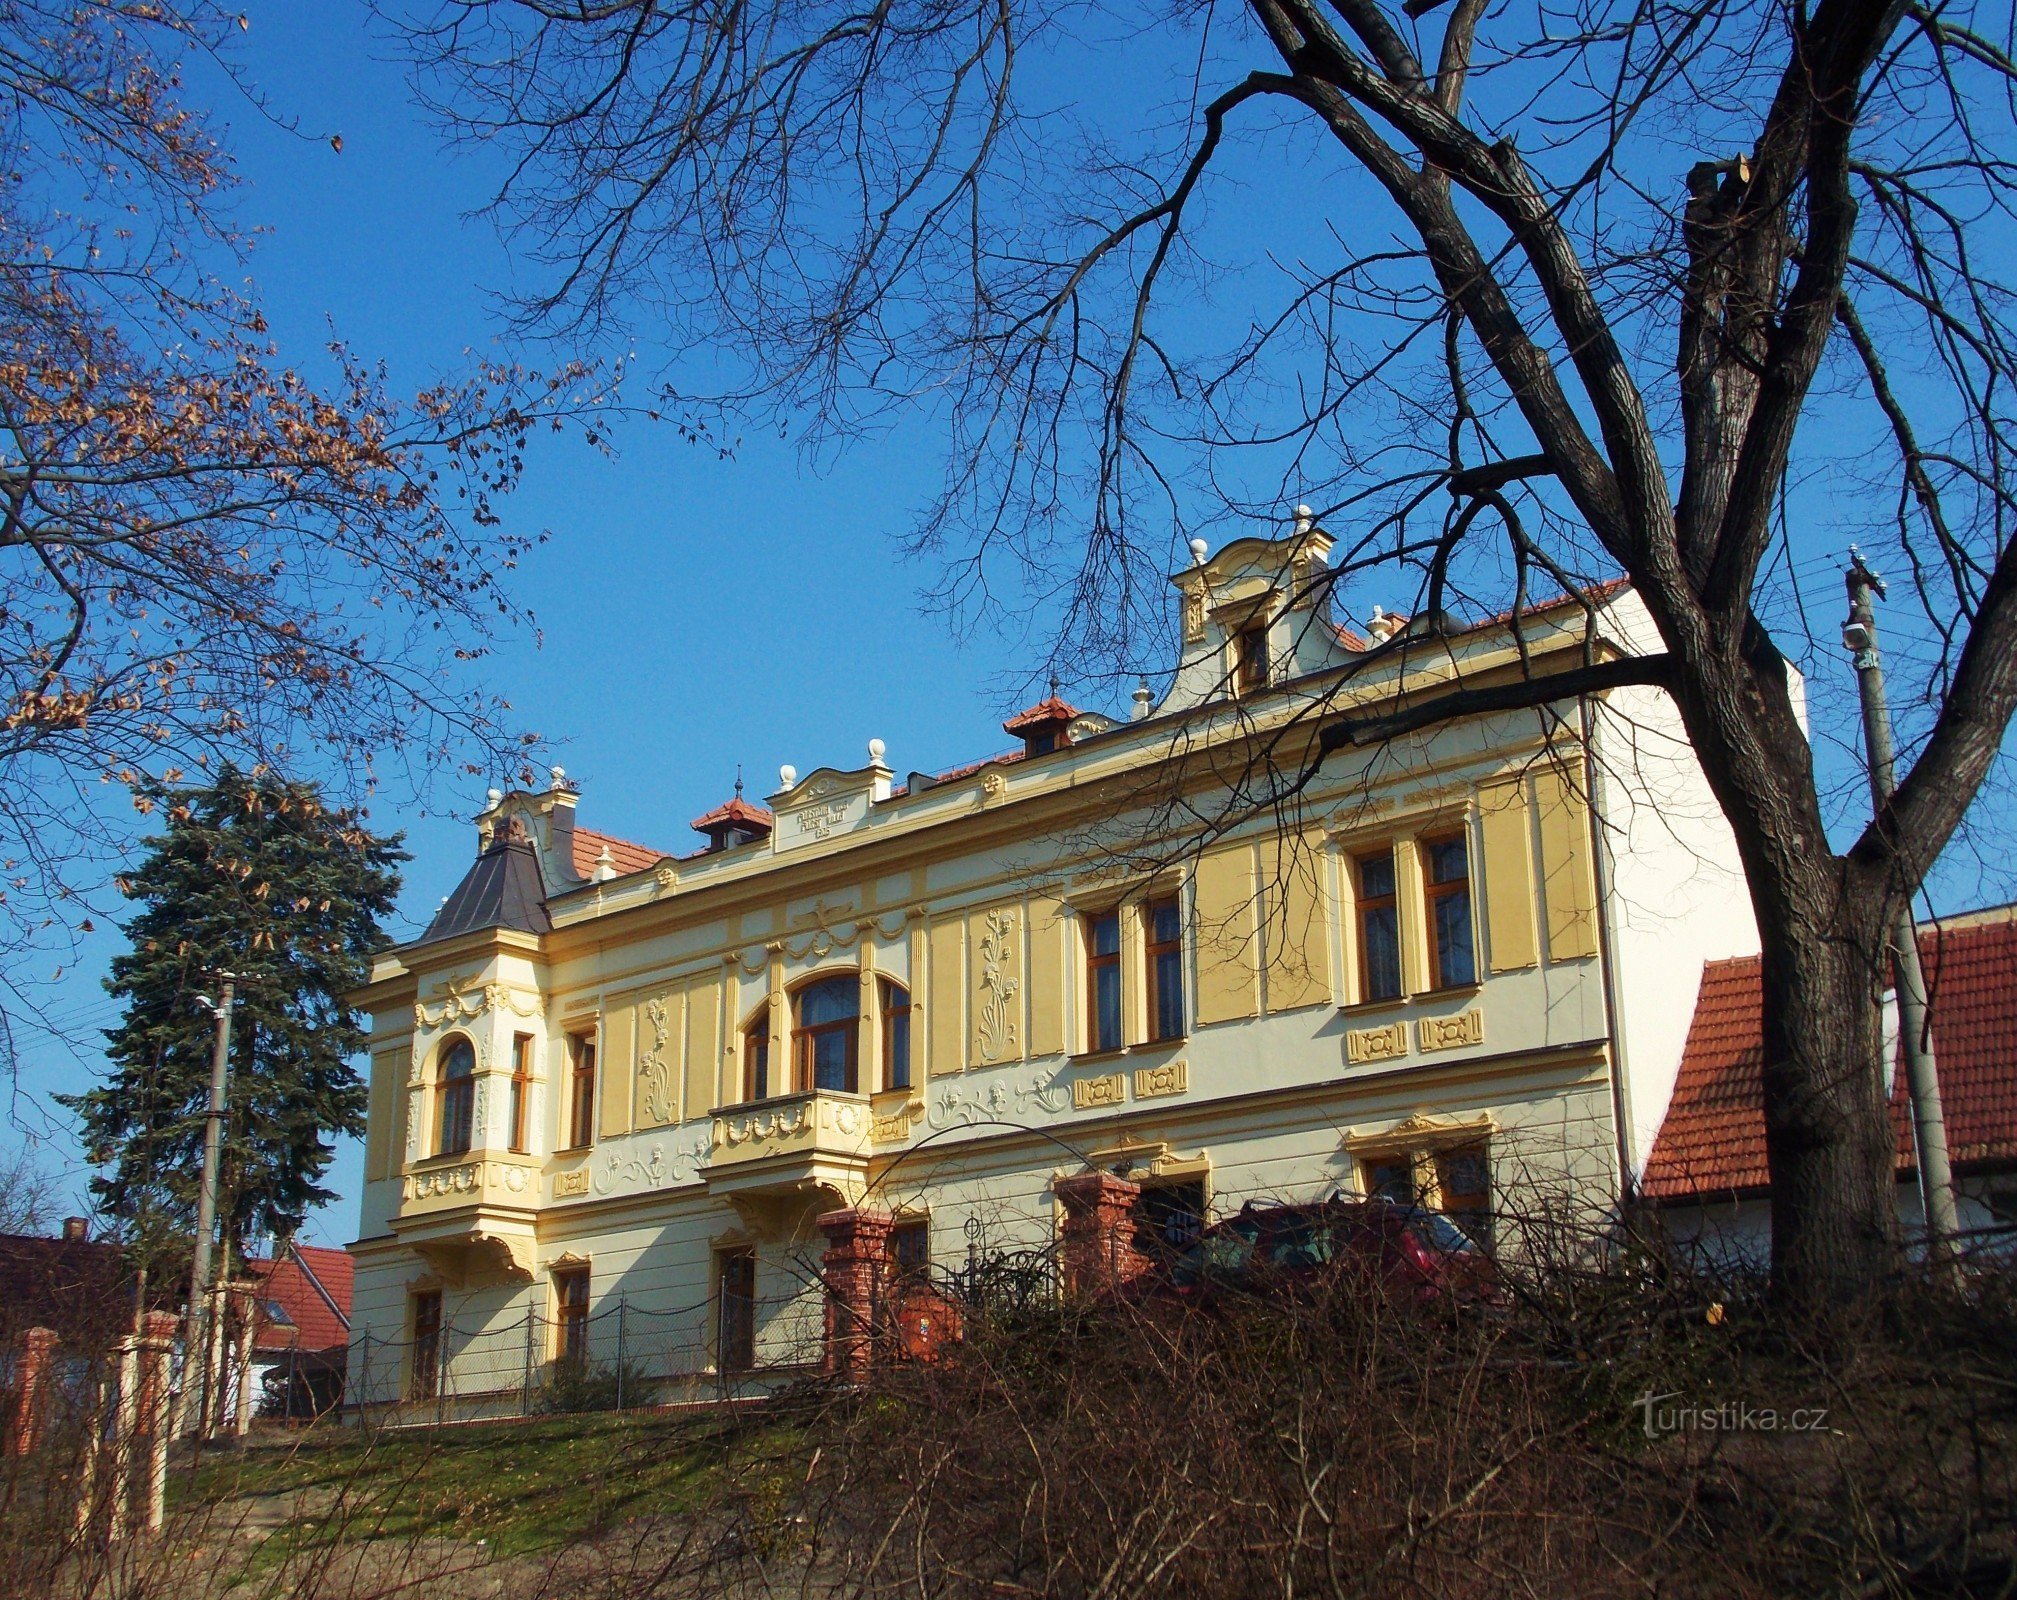 Fúrst's Villa, casa de huéspedes para alojamiento en el centro de Bzenc